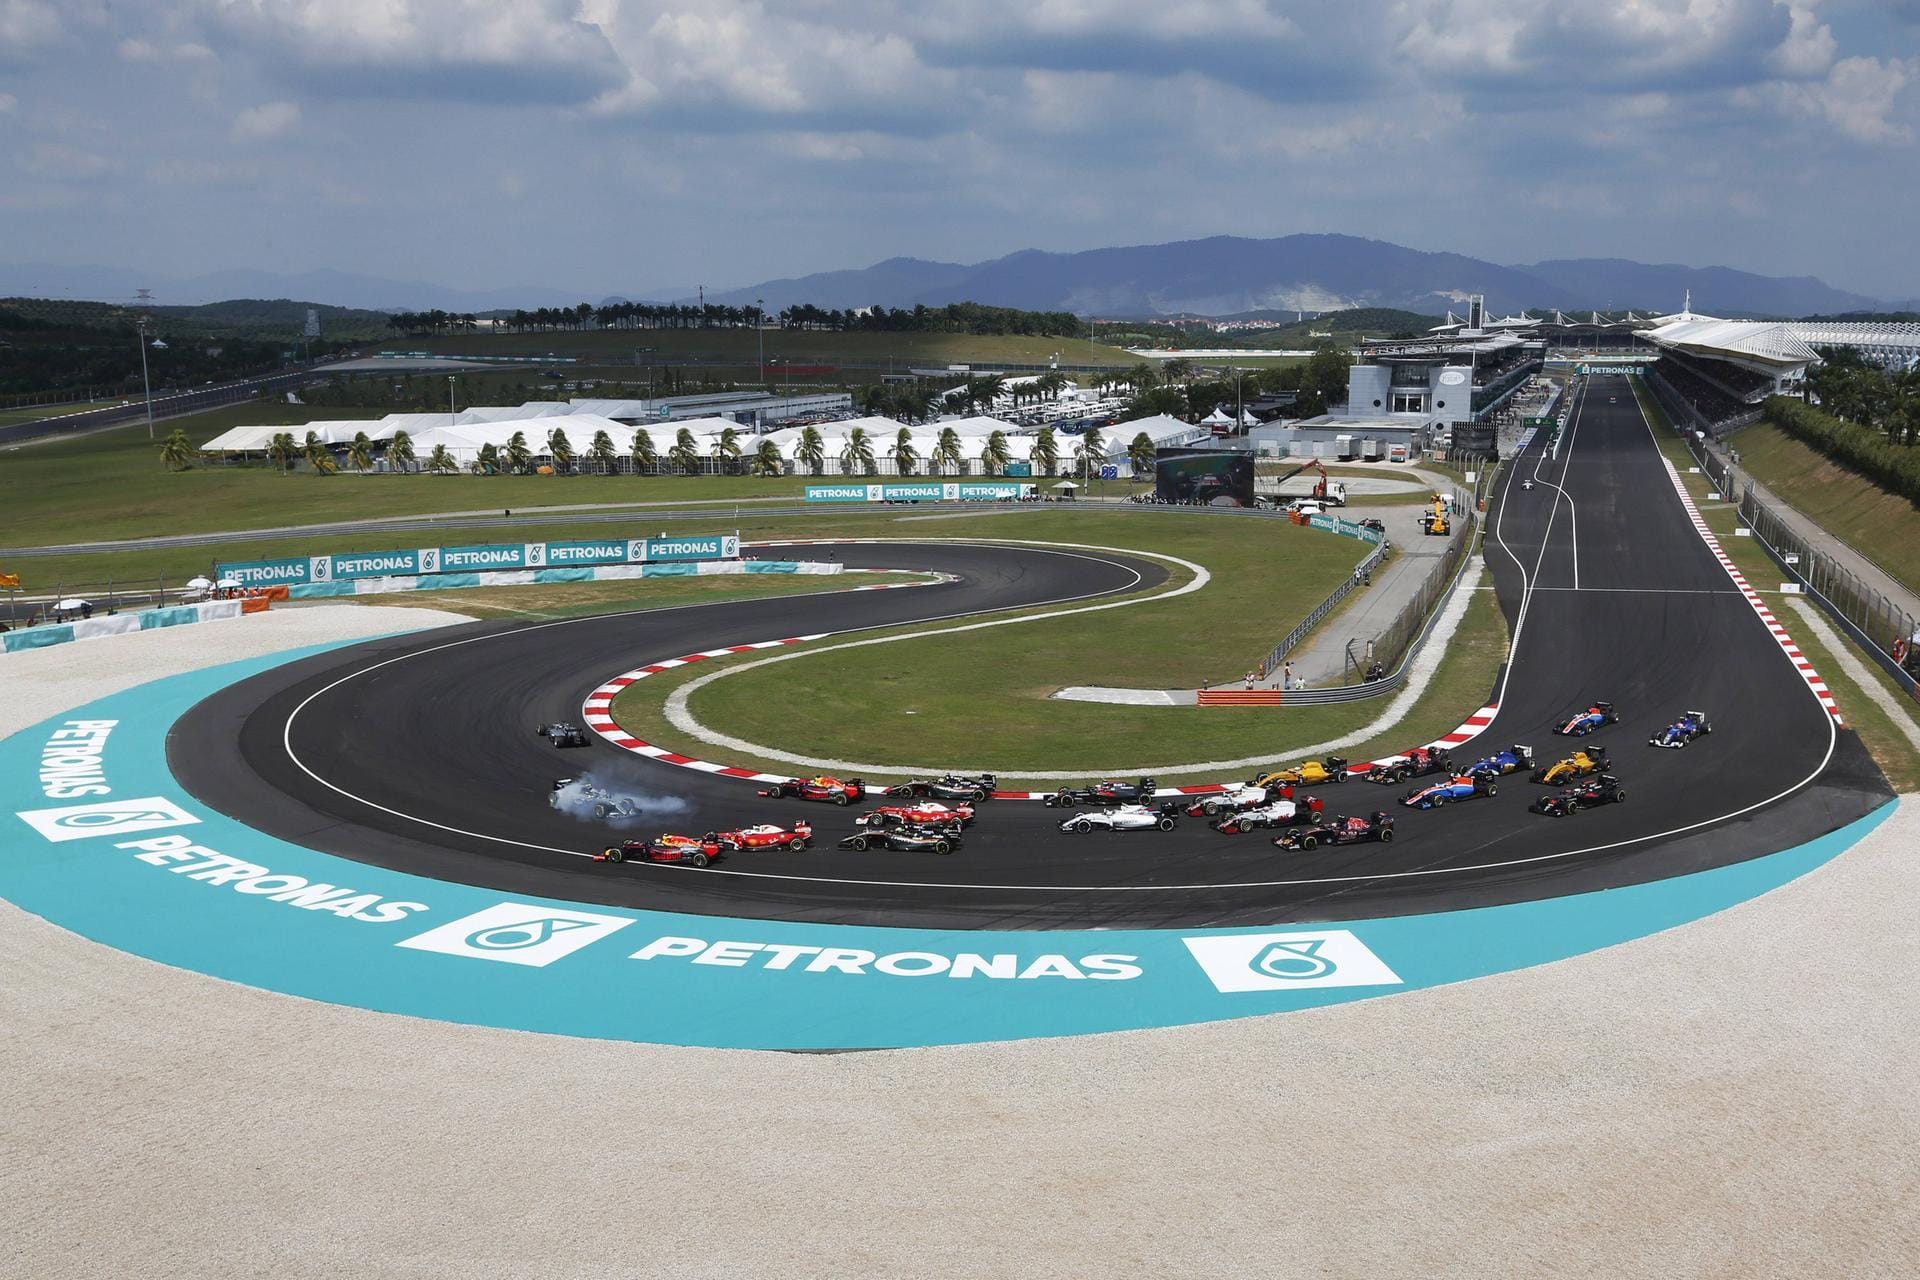 Aus in Runde eins: Für Sebastian Vettel ist der Arbeitstag beim Großen Preis von Malaysia bereits nach wenigen Metern beendet. Der Ferrari-Pilot kollidiert kurz nach dem Start mit Nico Rosberg im Mercedes. Der WM-Spitzenreiter kann das Rennen hingegen fortsetzen.